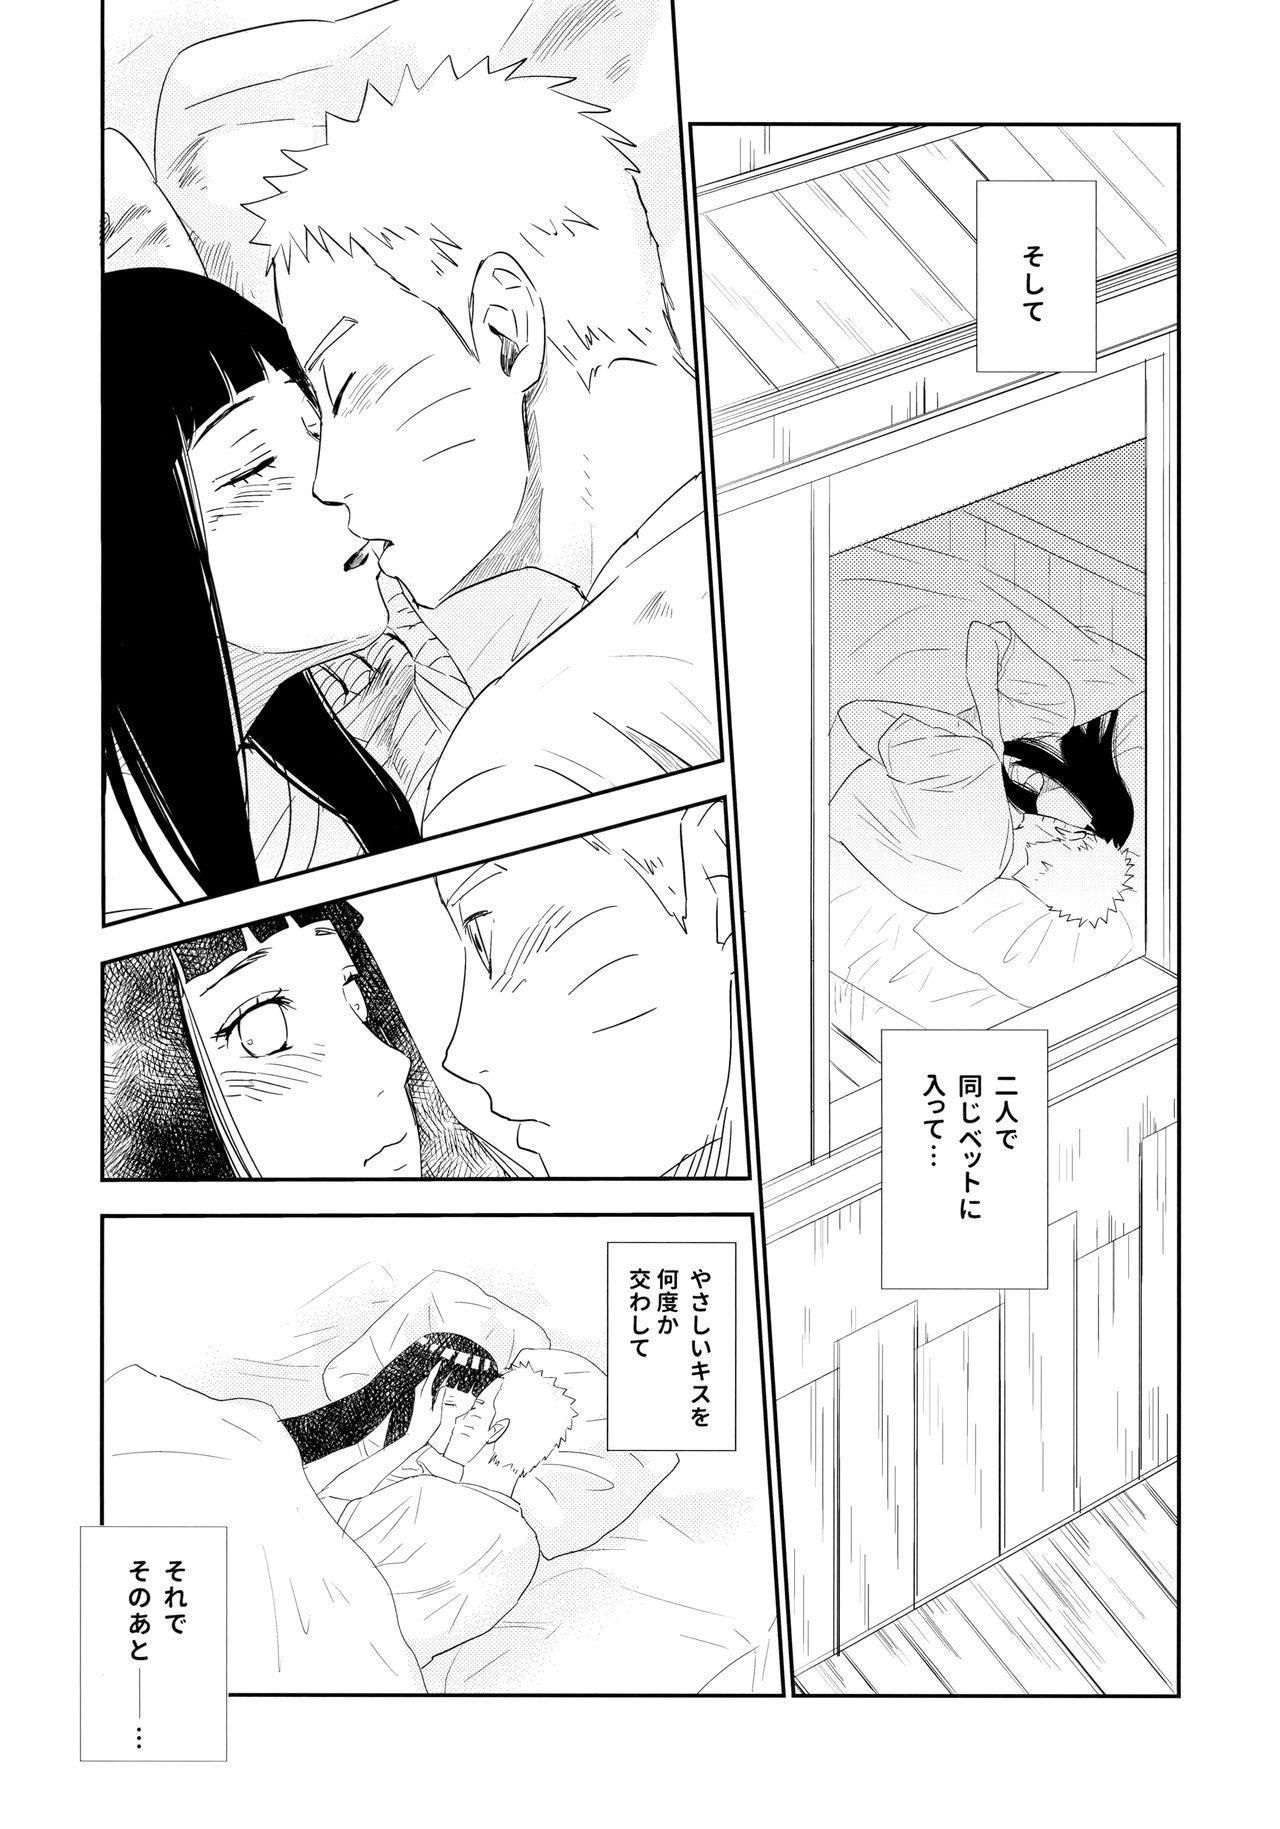 Chick PRESENT - Naruto Cogiendo - Page 6